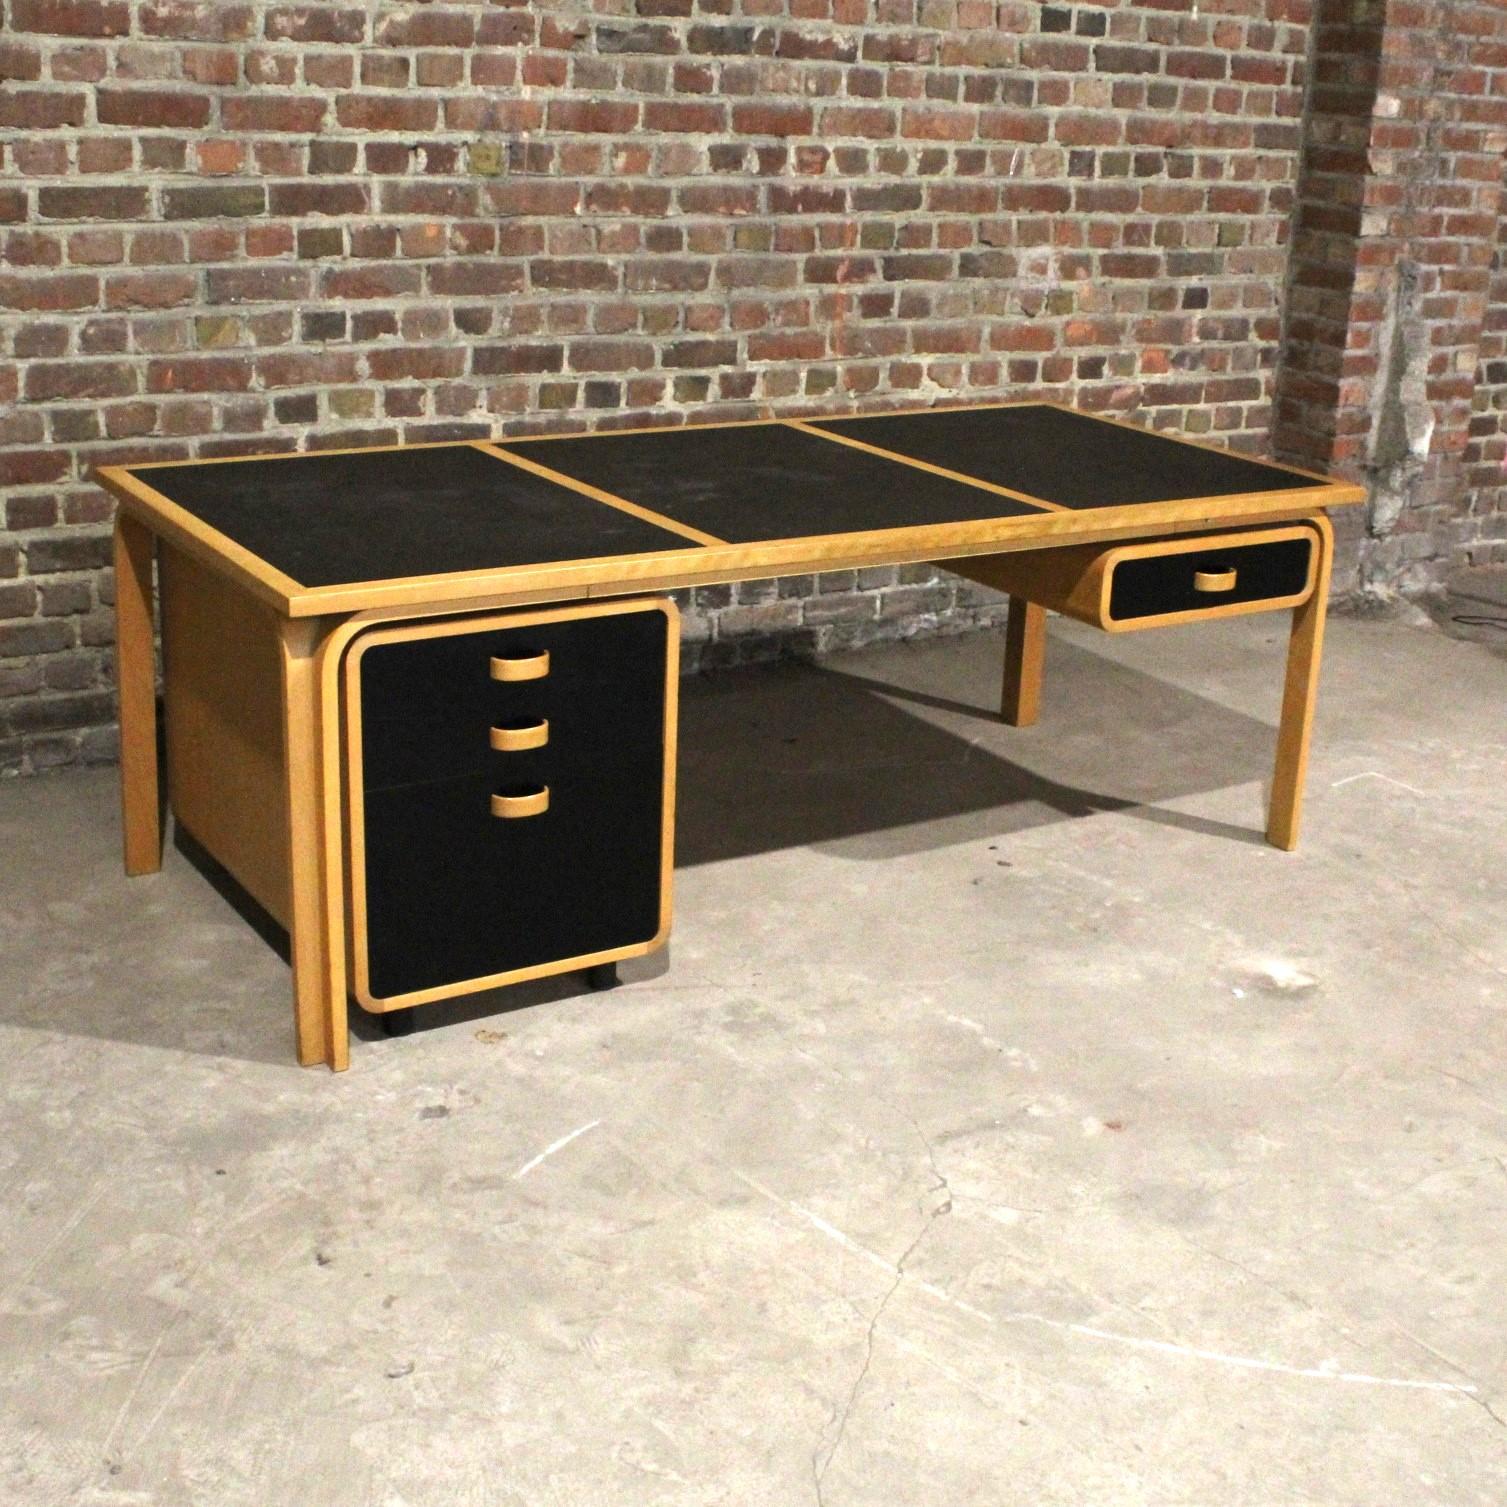 Scandinavian Modern Desk by Rud thygesen & Johnny sorensen for editor Magnus Olesen, Denmark For Sale